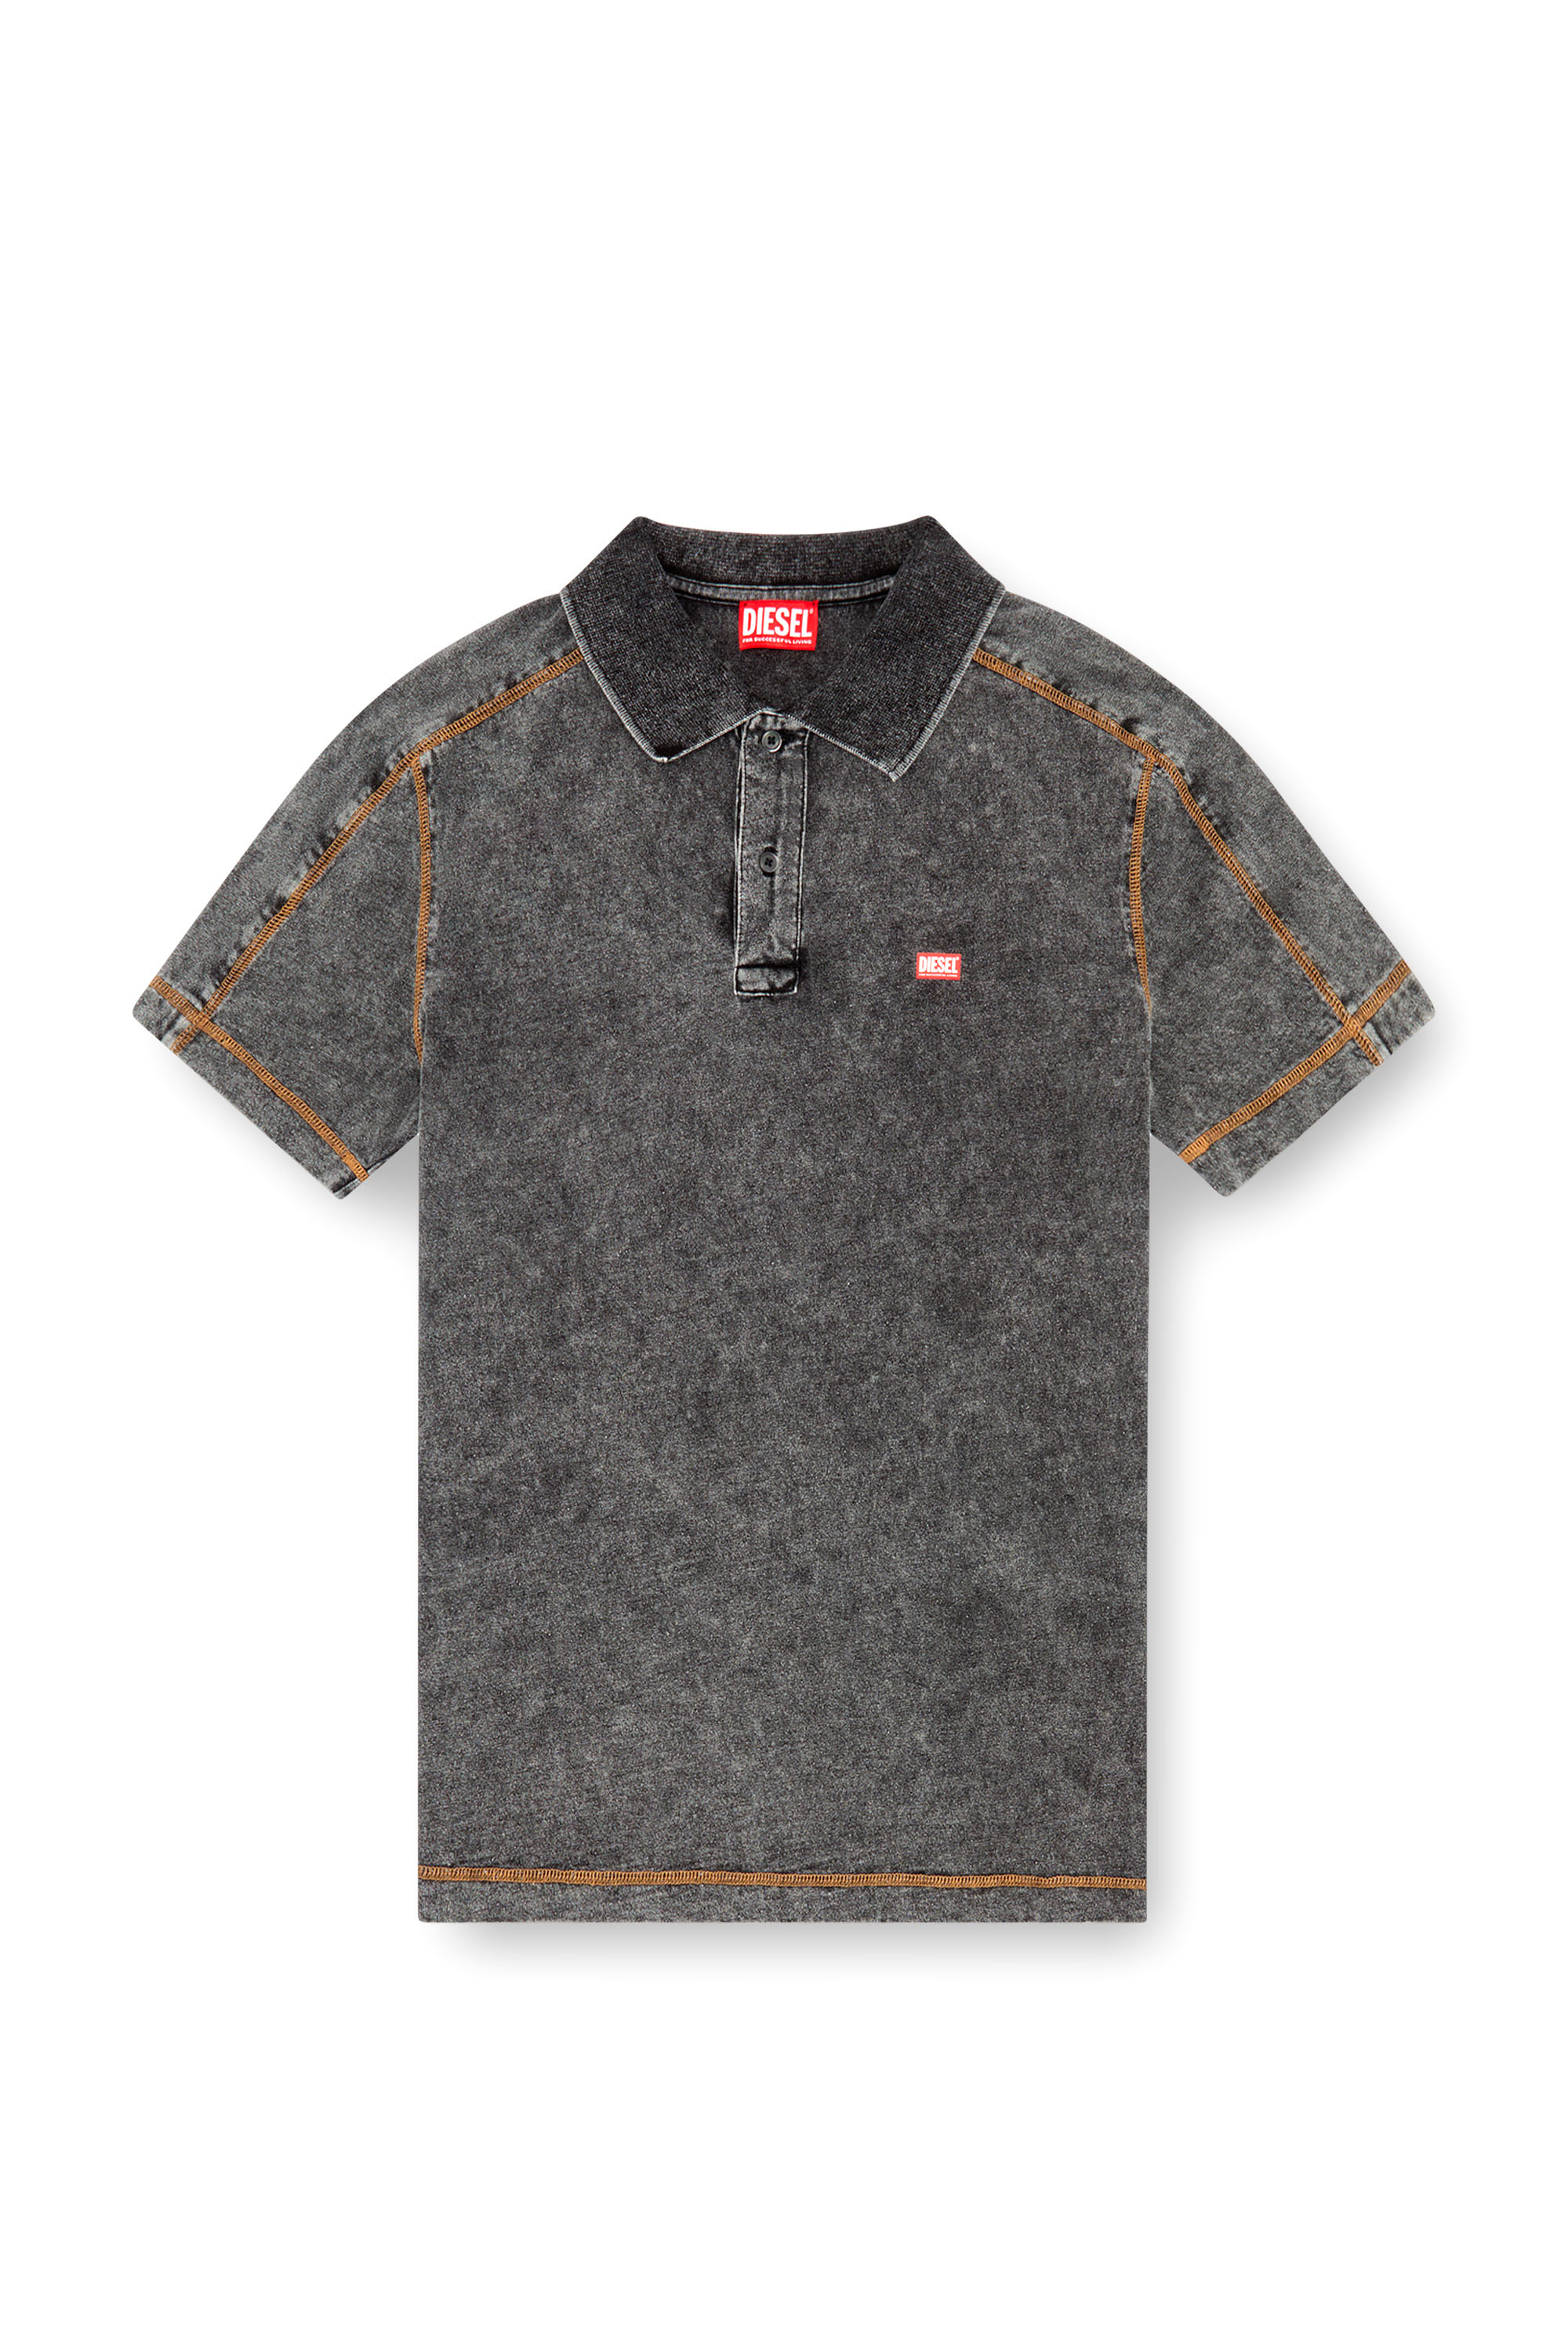 Diesel - T-SWIND, Male Polo shirt in denim-effect jersey in グレー - Image 3